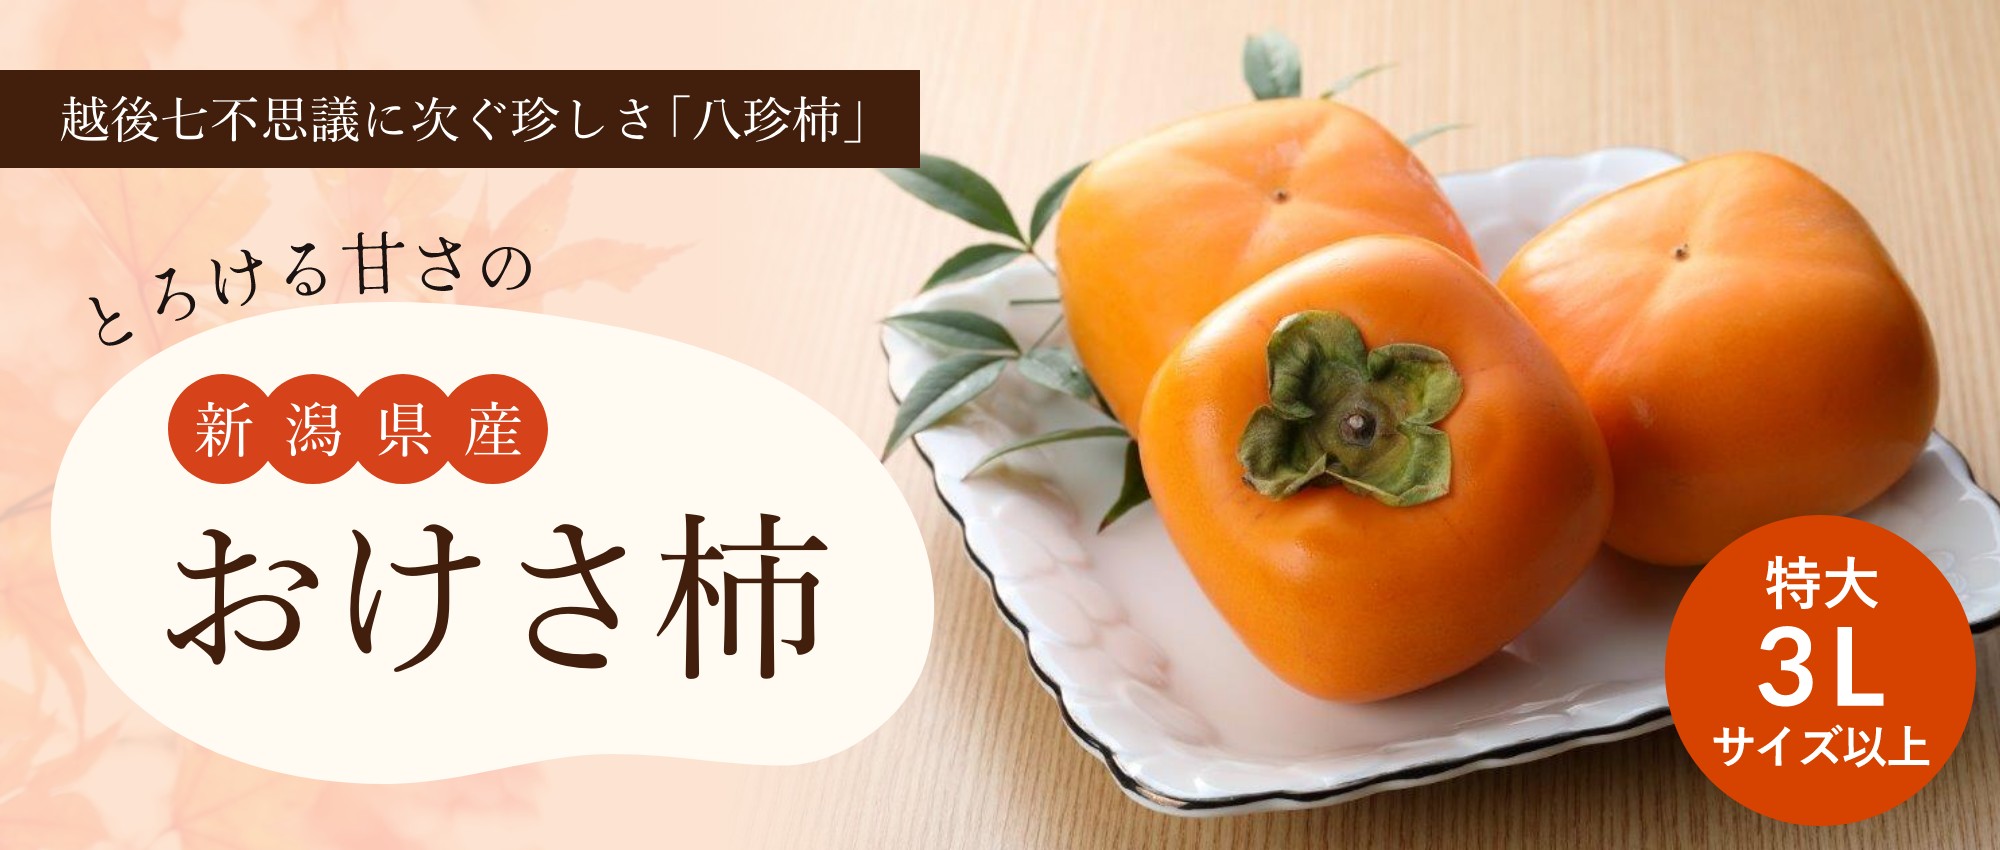 とろける甘さの新潟県産おけさ柿